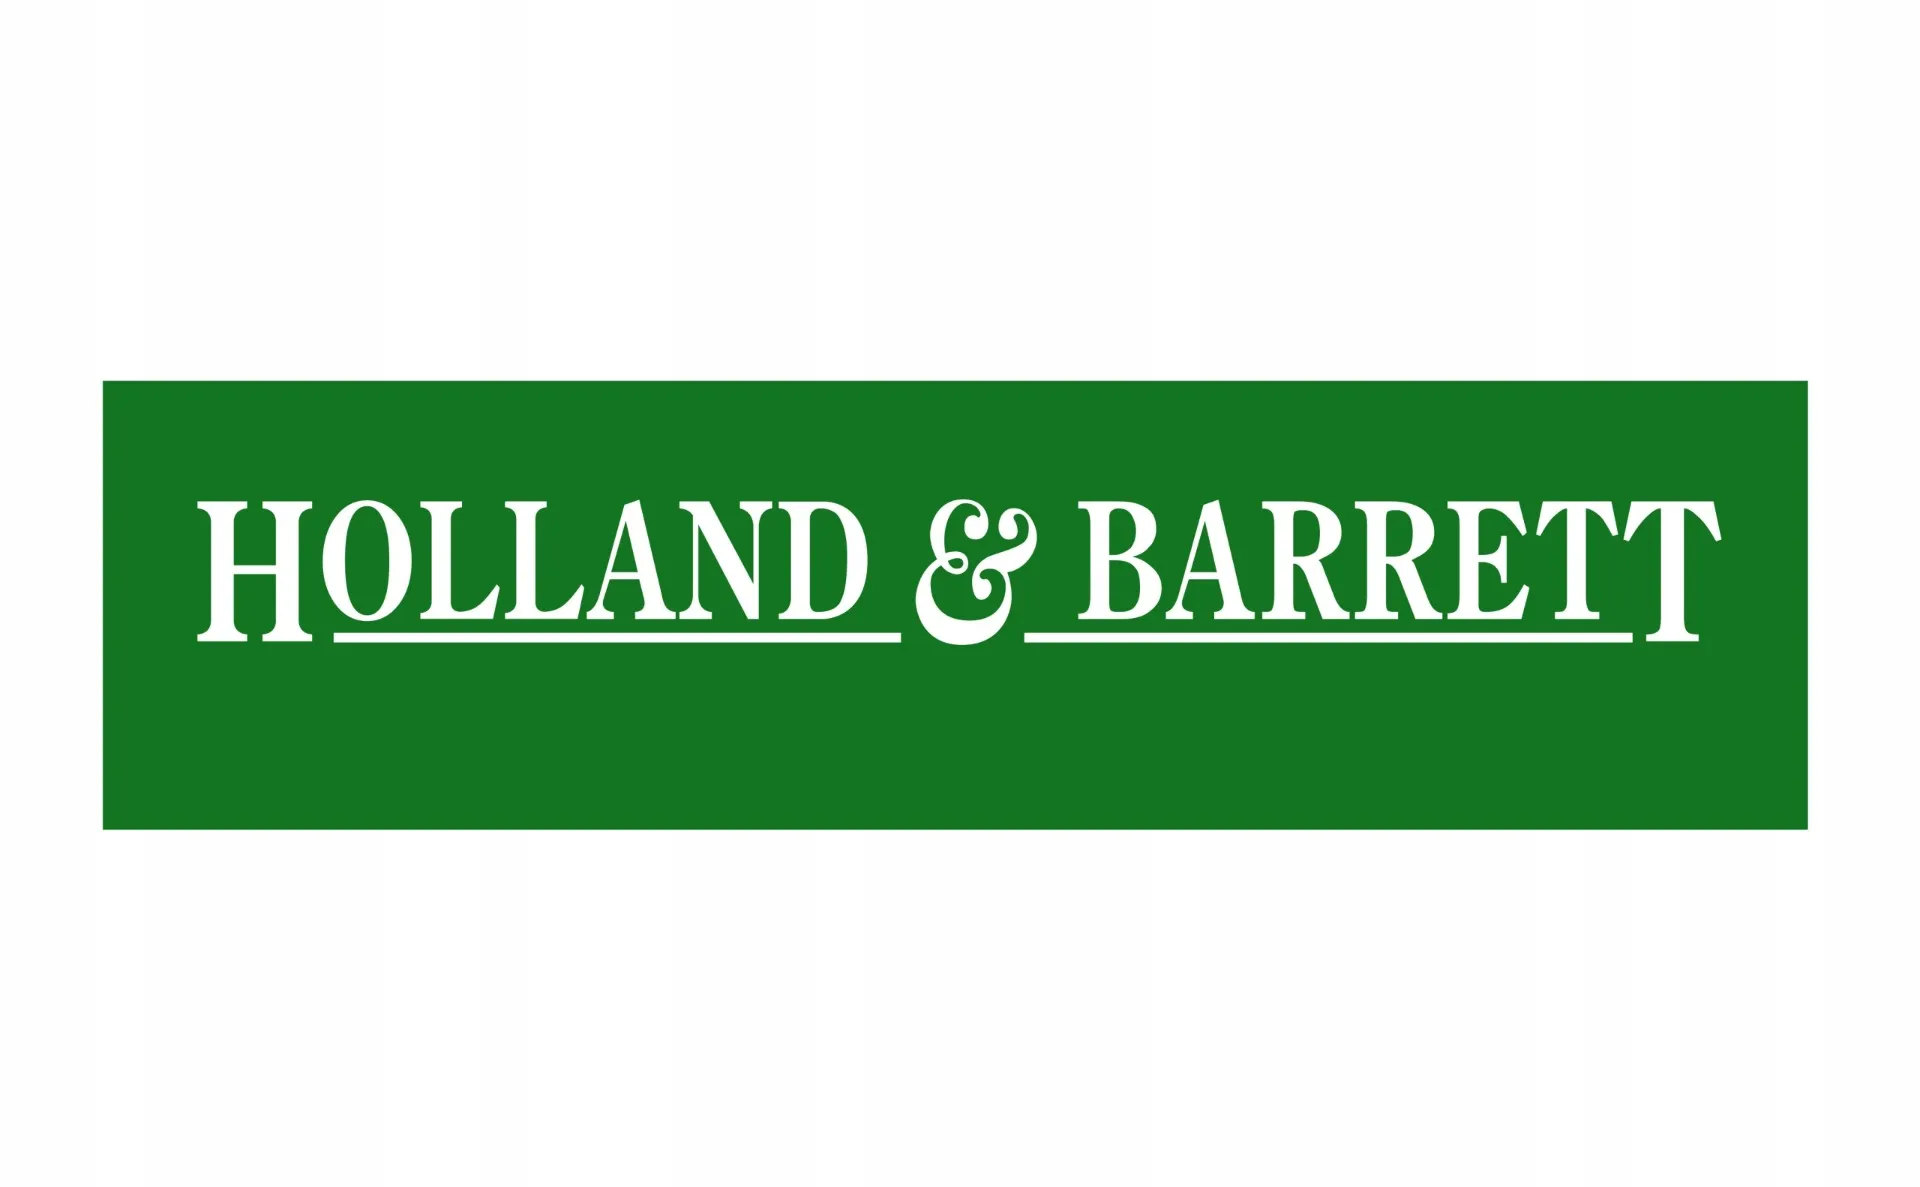 Logo Holland & Barrett